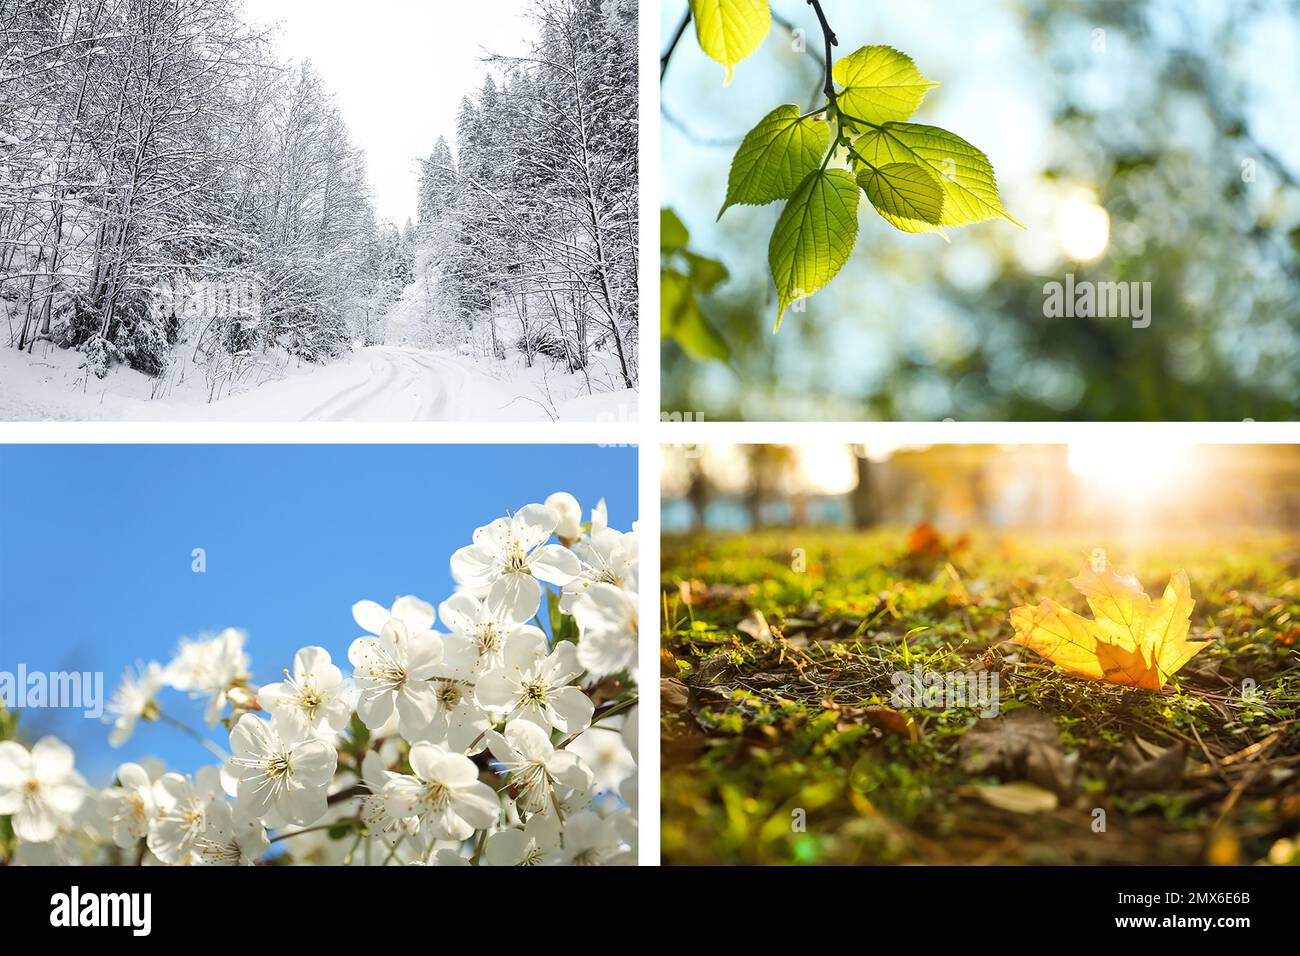 Wunderschöne Fotos der Natur. Four Seasons Collage Stockfoto